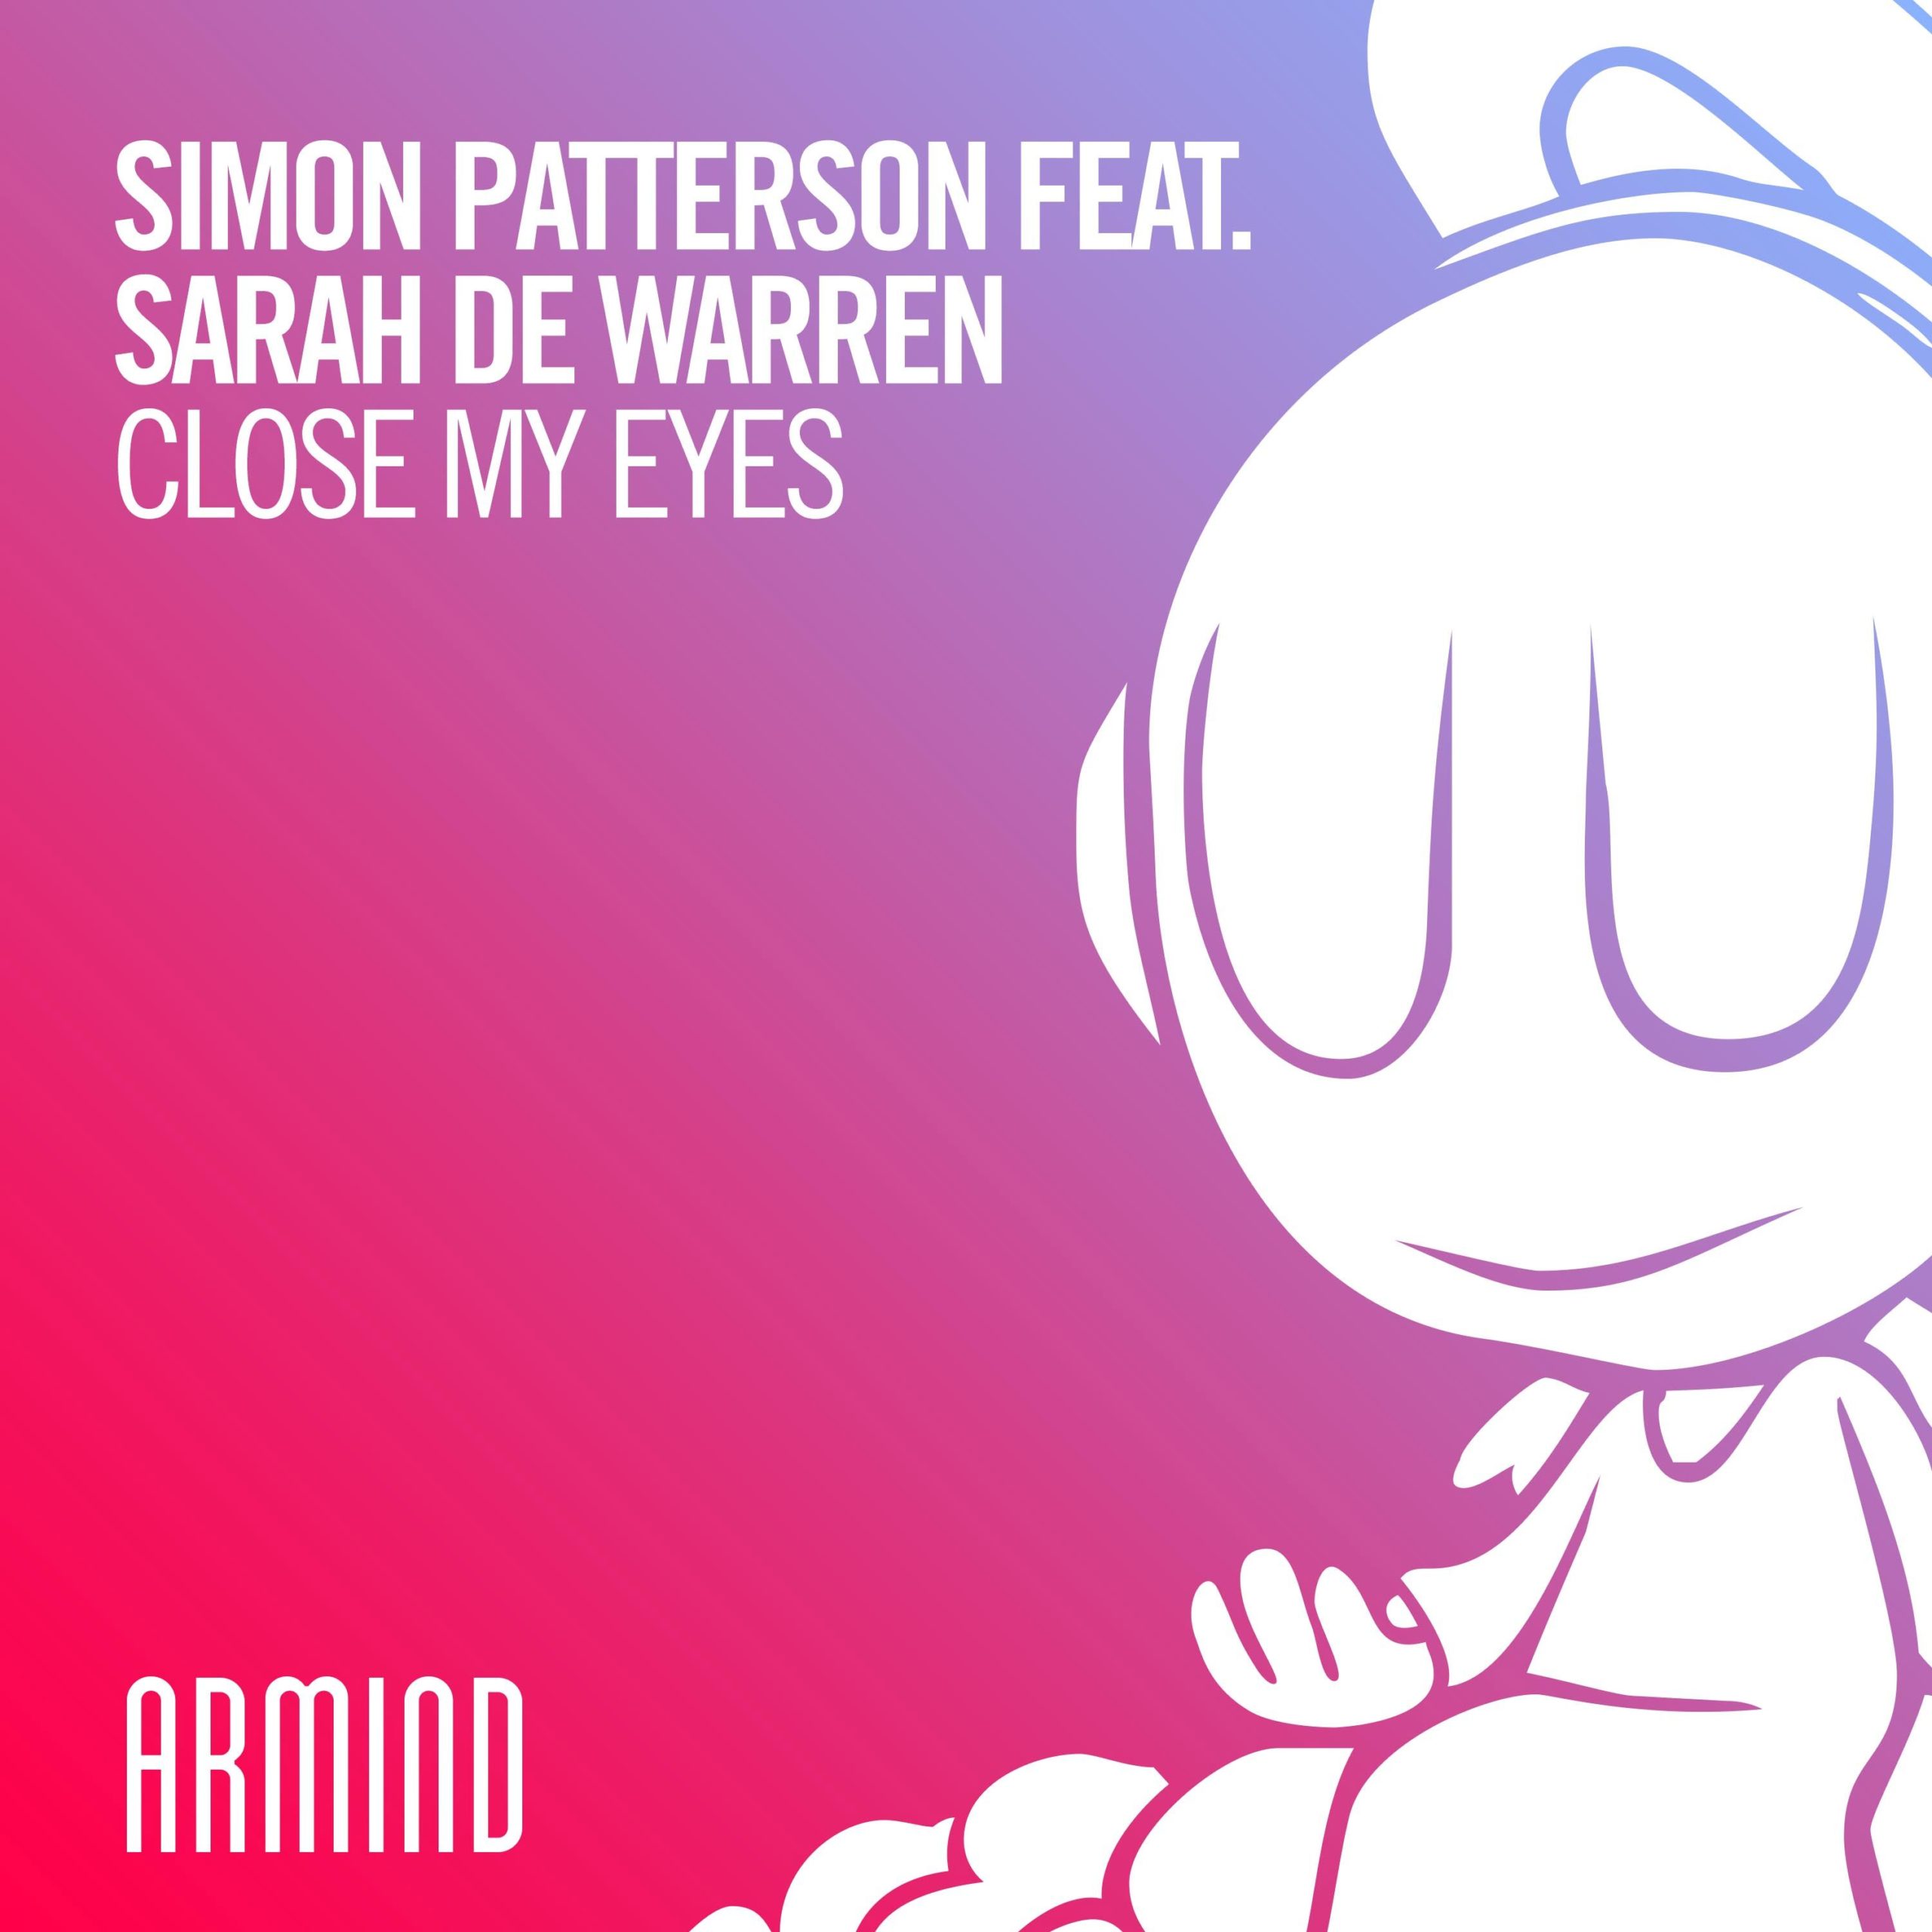 Simon Patterson feat. Sarah de Warren presents Close My Eyes on Armind